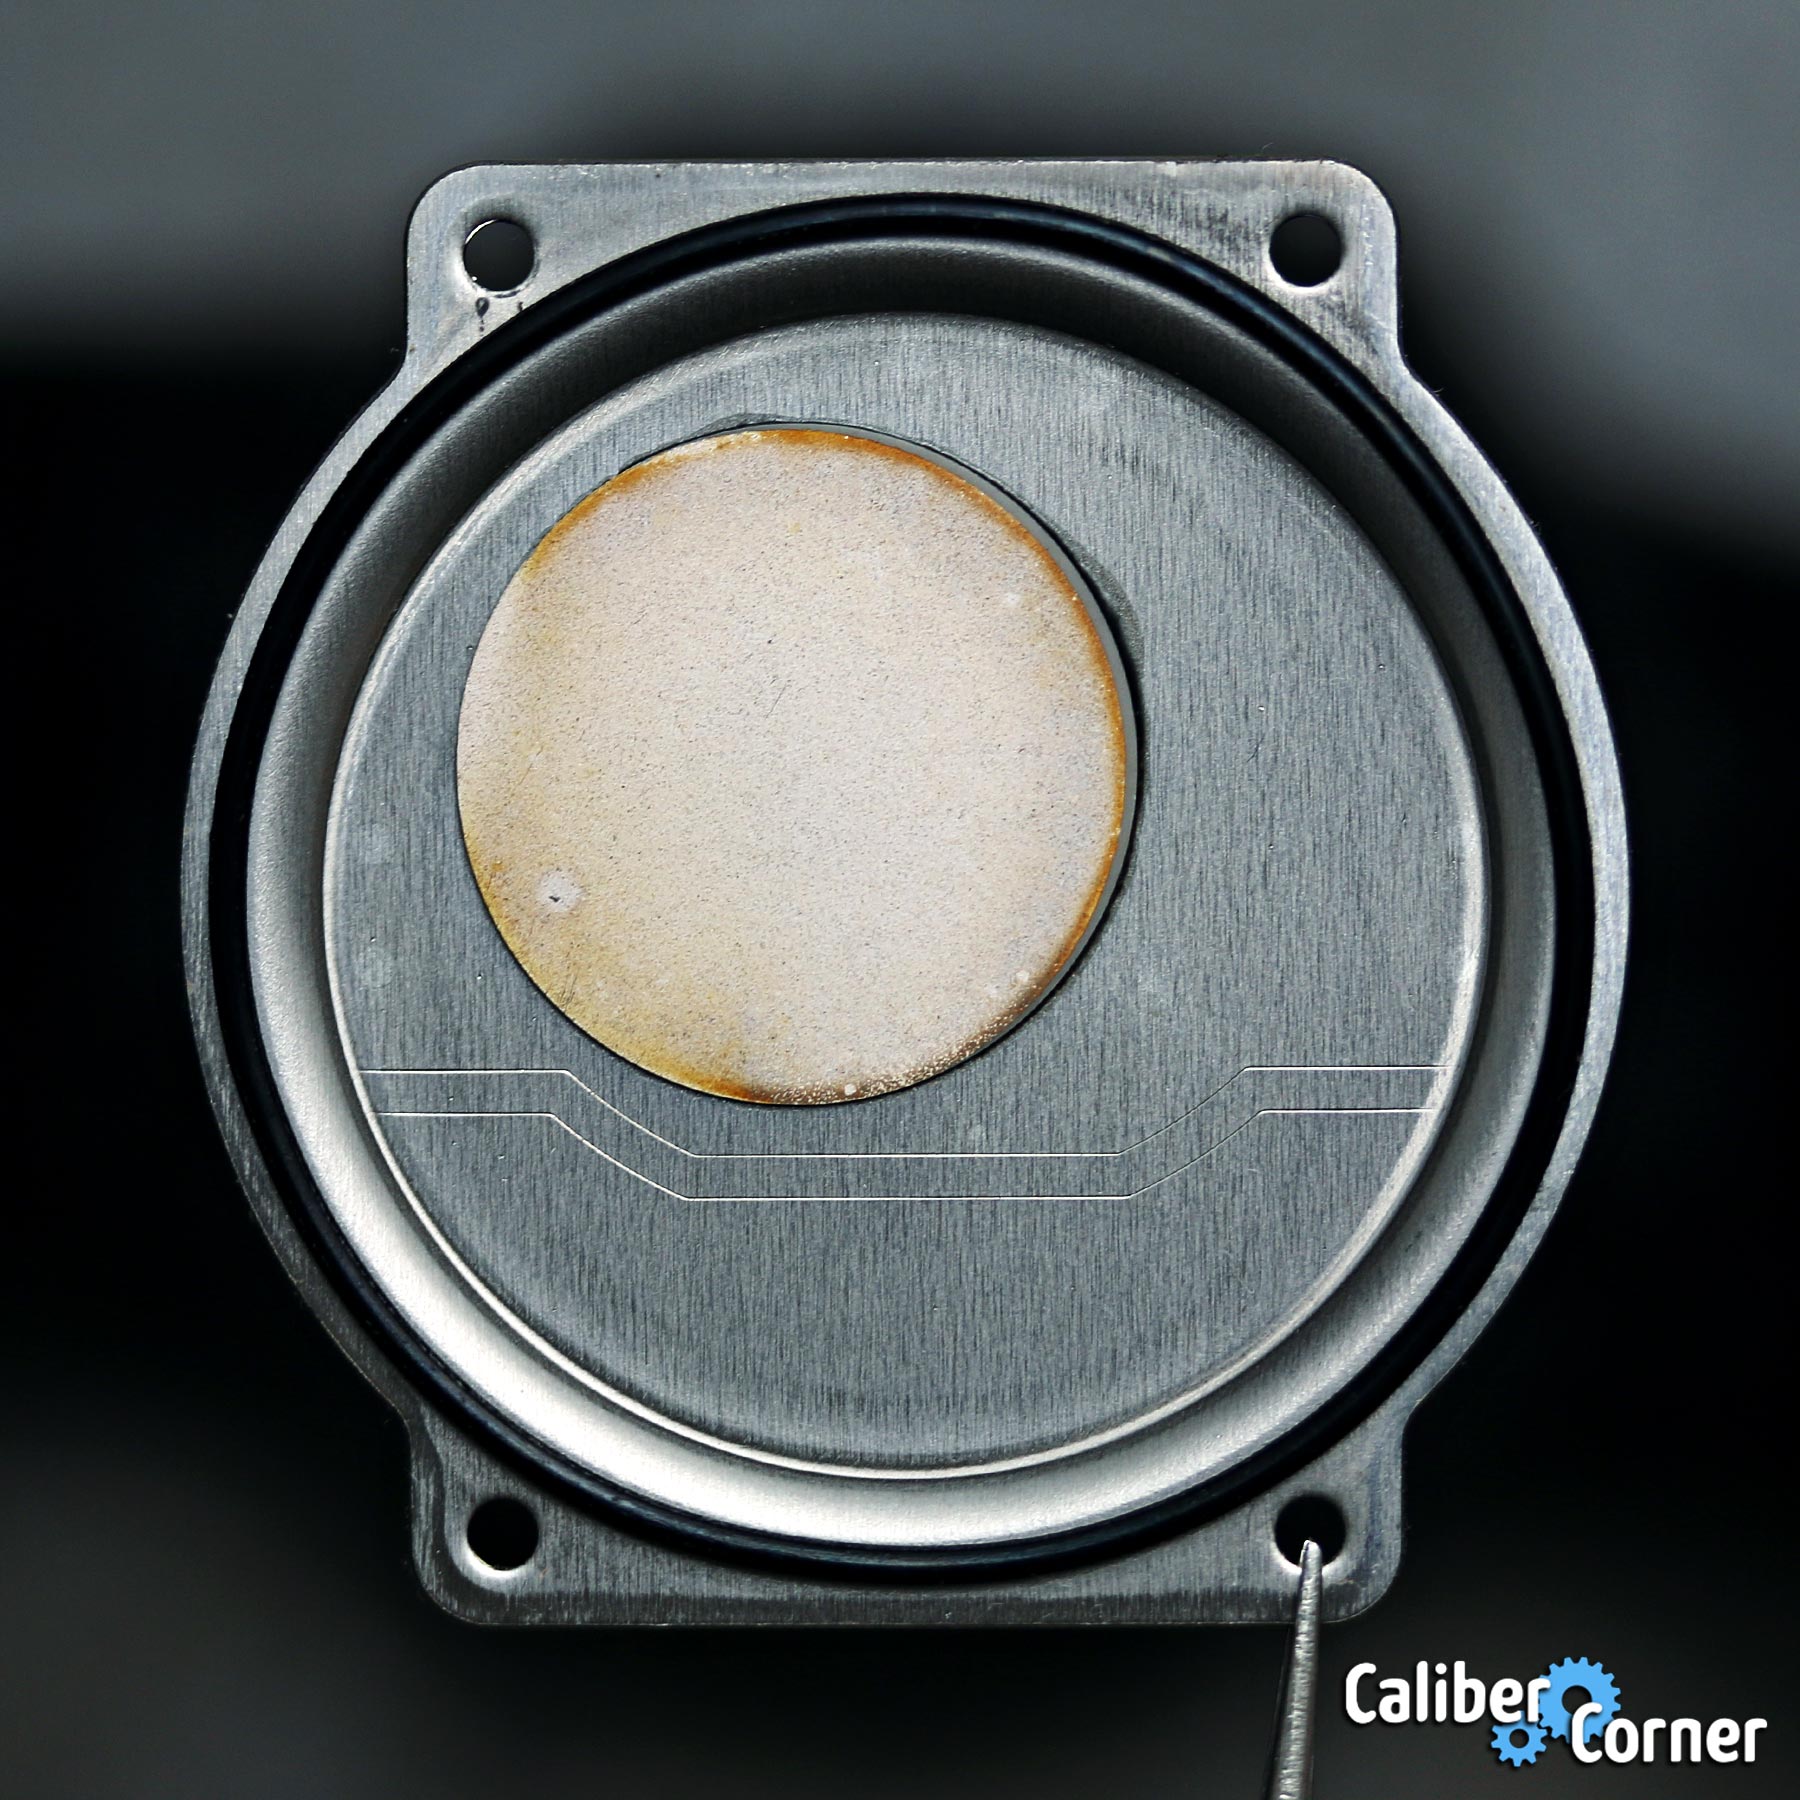 Casio G Shock Caliber 3159 Module Caseback Cover